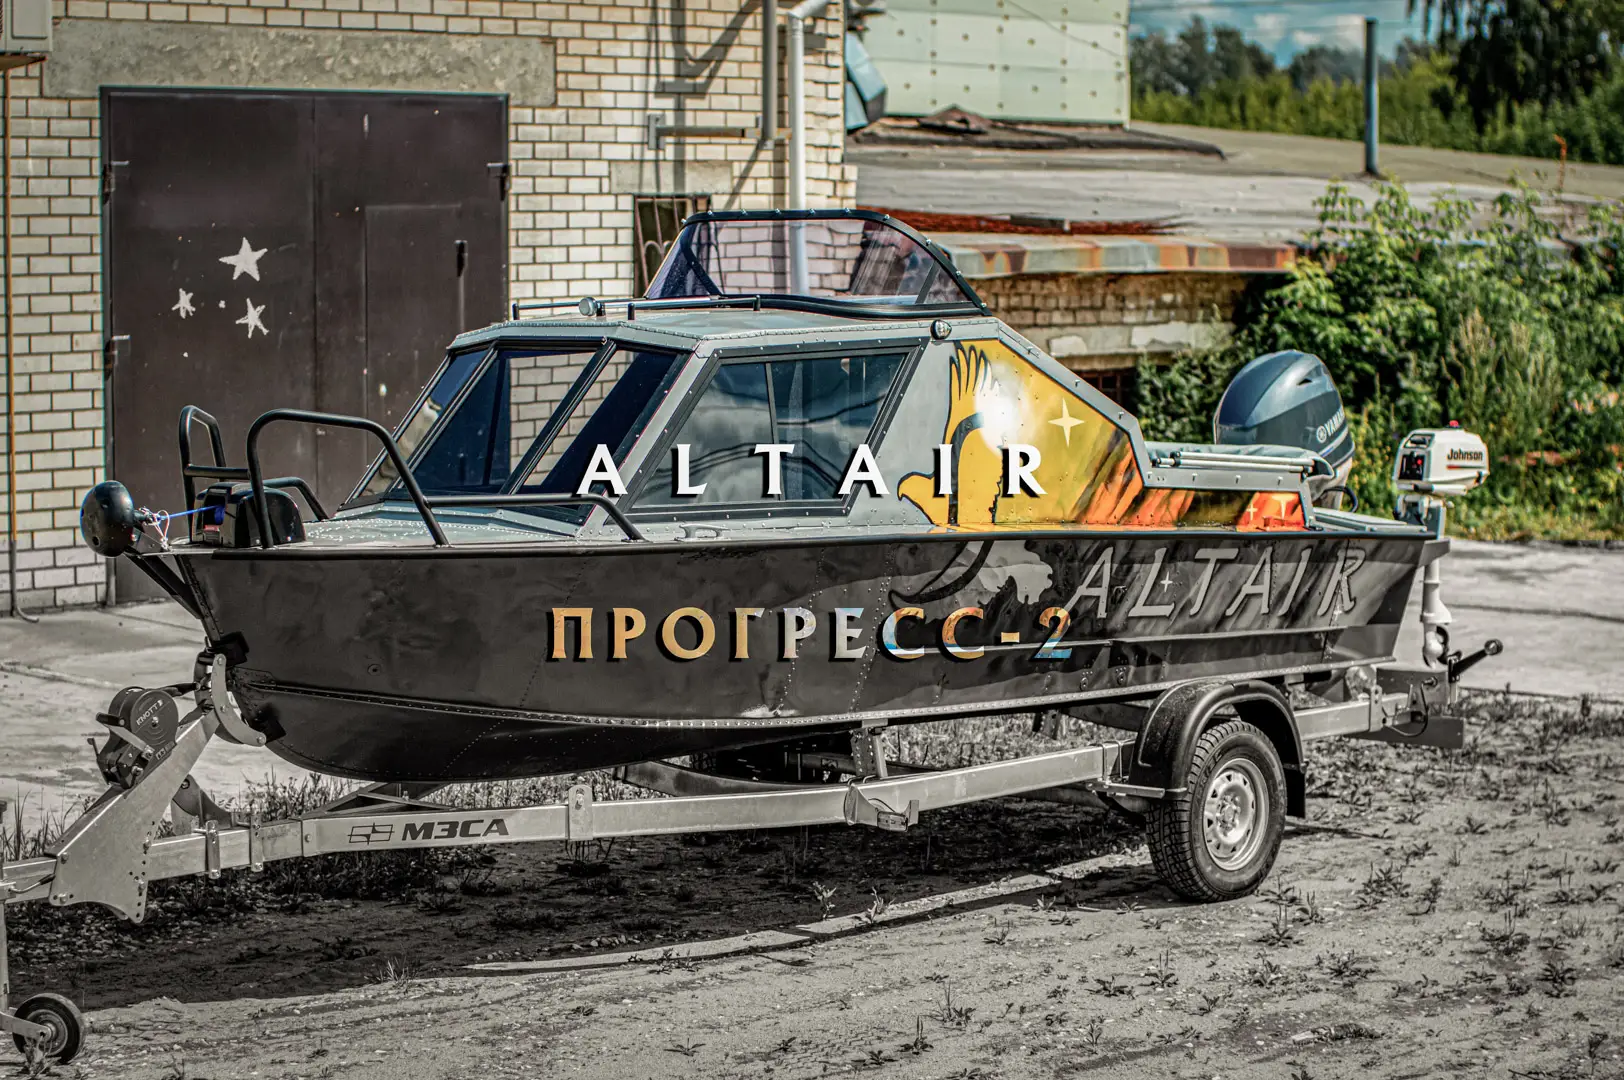 (2019) Прогресс 2 с рубкой проект «Альтаир» лодка с интереснейшей историей